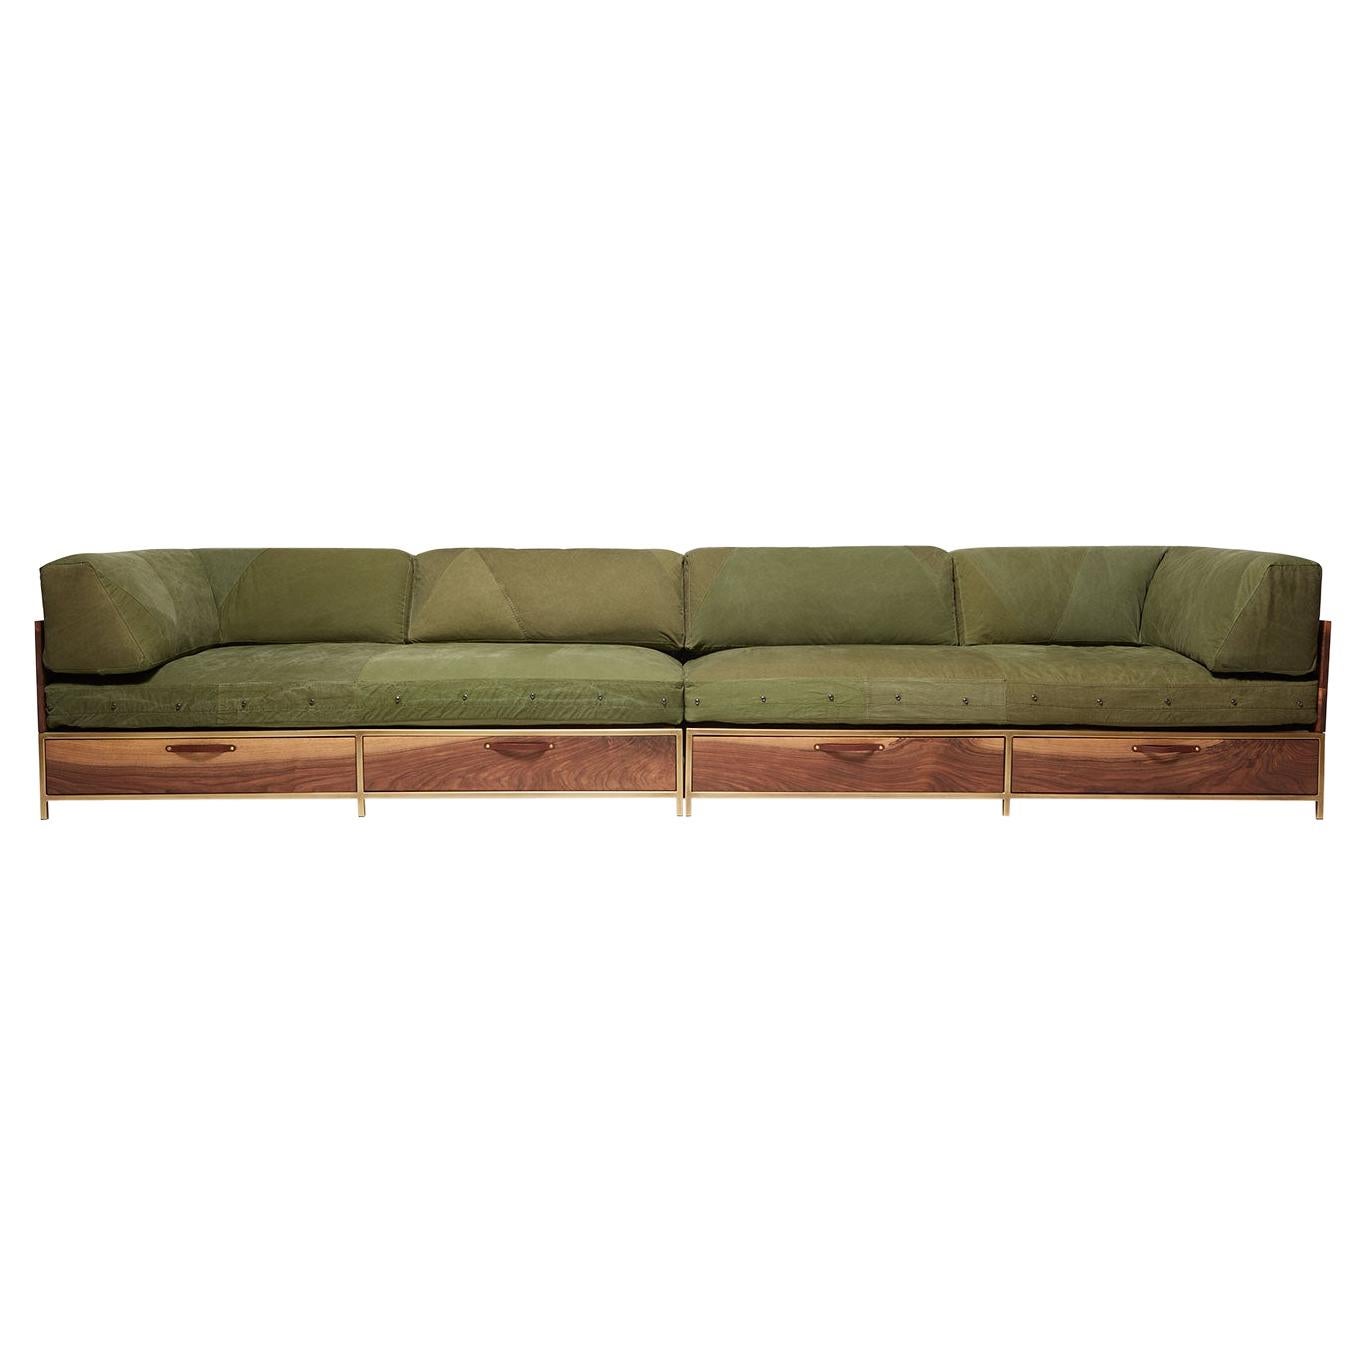 Sofa d'invité militaire vintage avec tiroirs de rangement